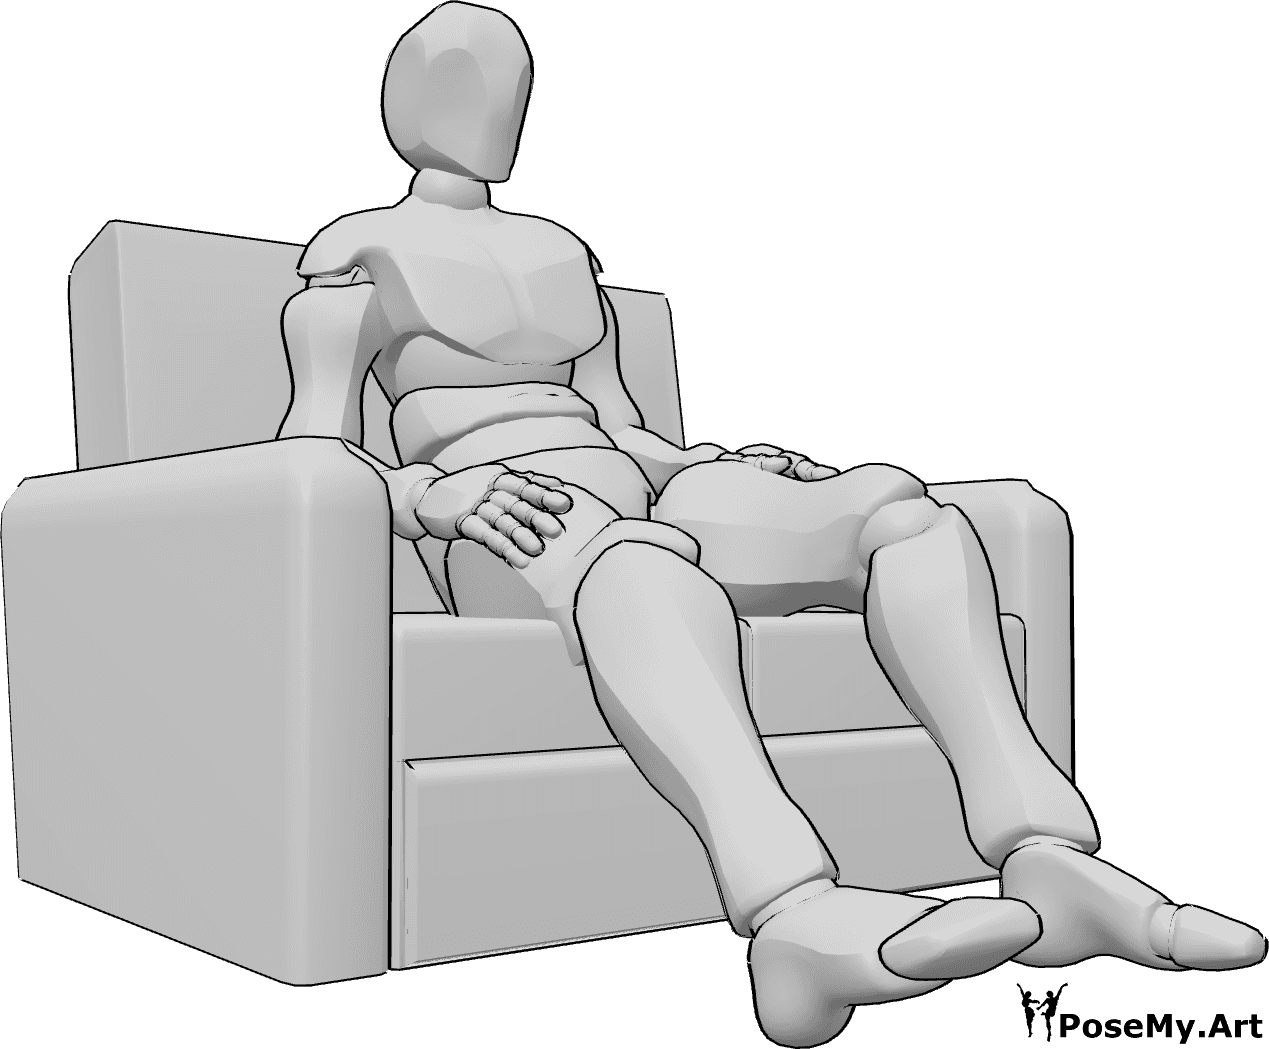 Referencia de poses- Postura sentada cómoda - Hombre sentado cómodamente en el sofá, con las manos en los bolsillos.